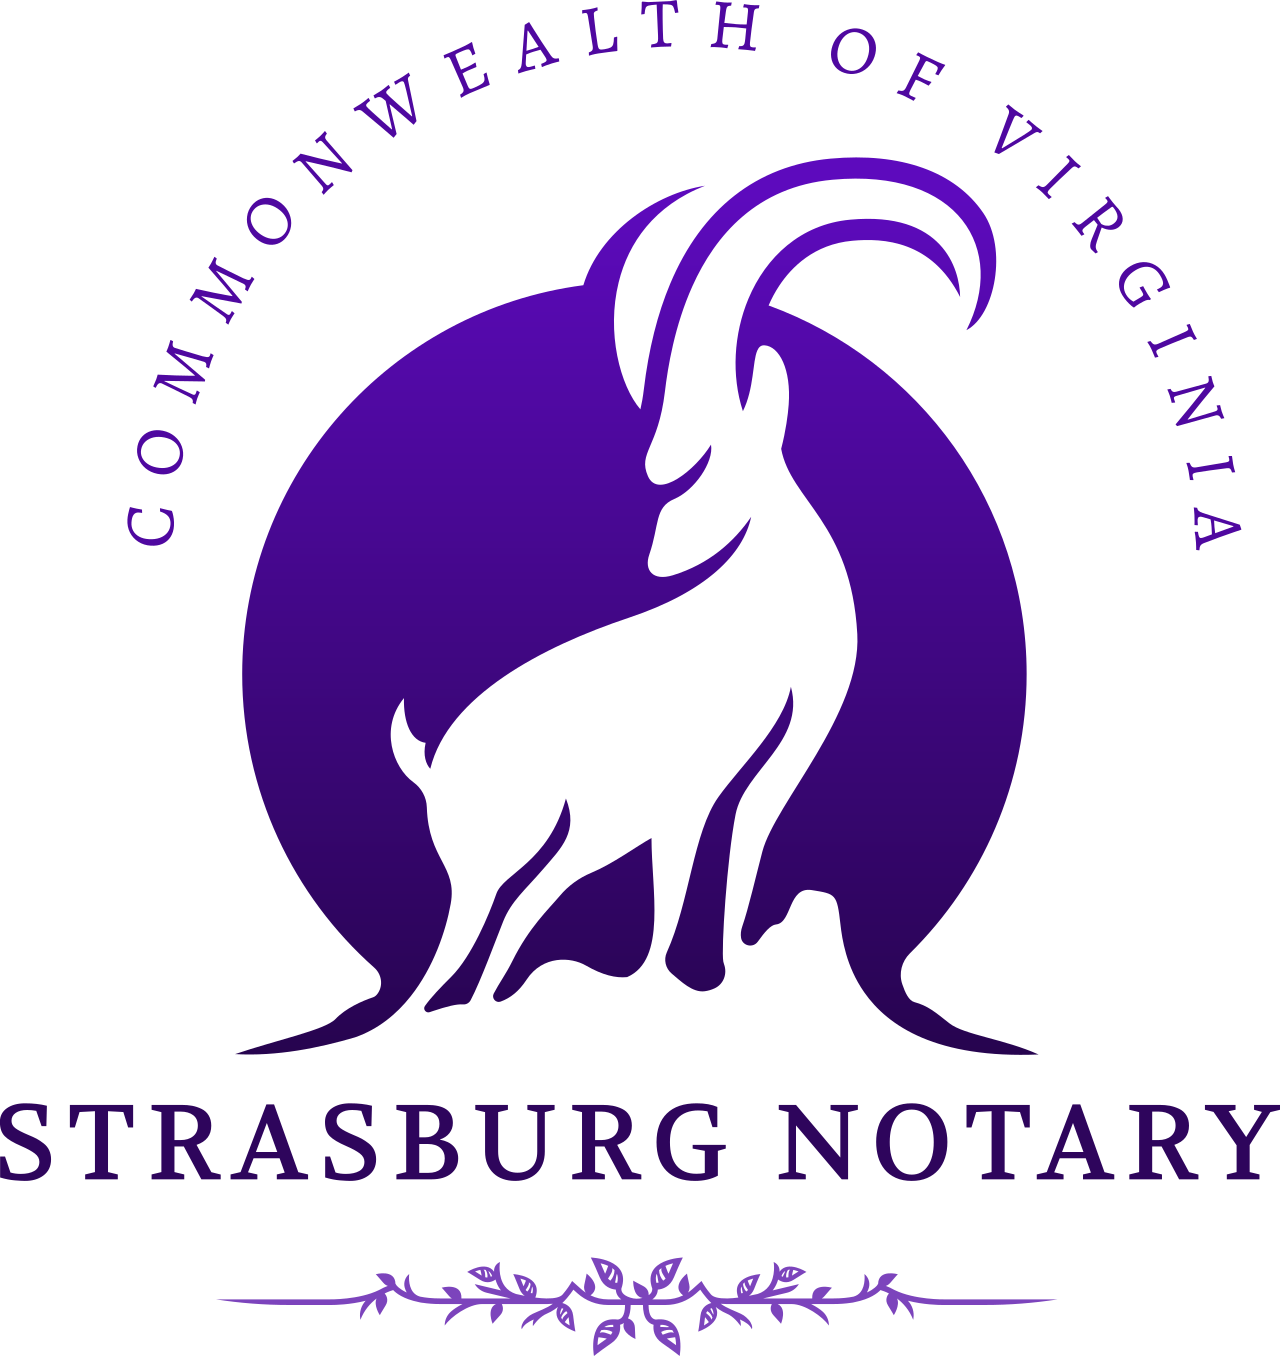 strasburg notary's logo